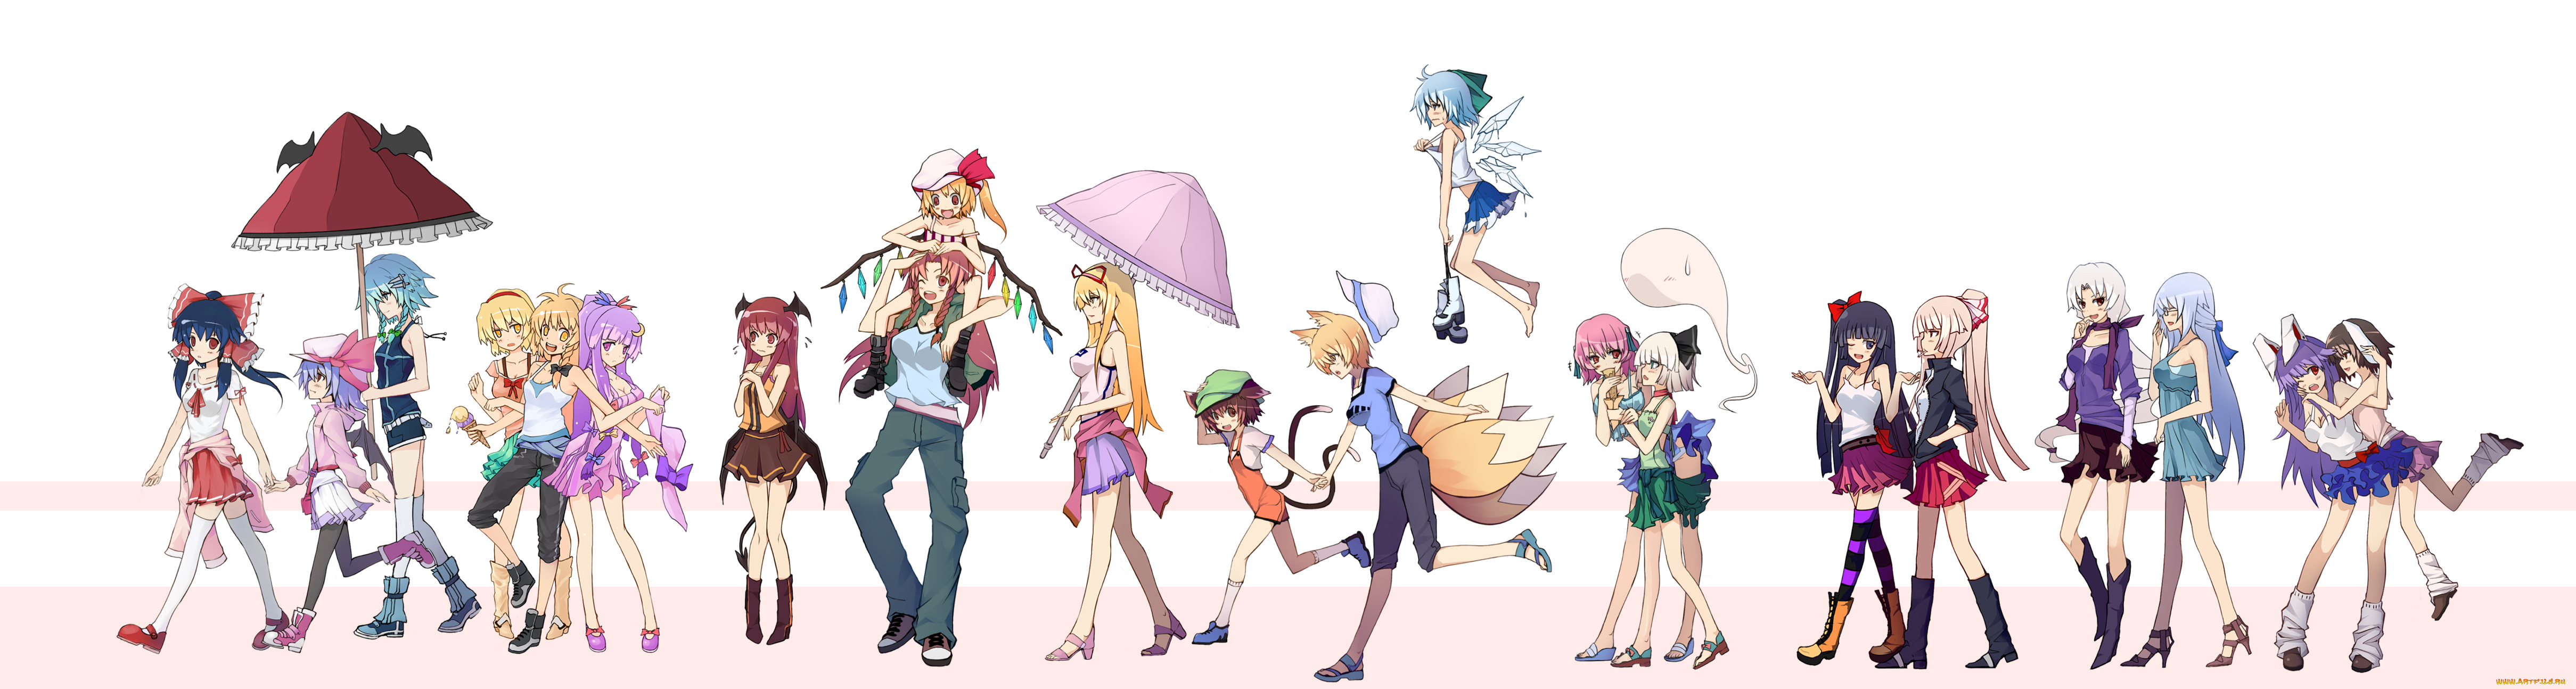 аниме, touhou, белый, фон, зонтики, персонажи, разные